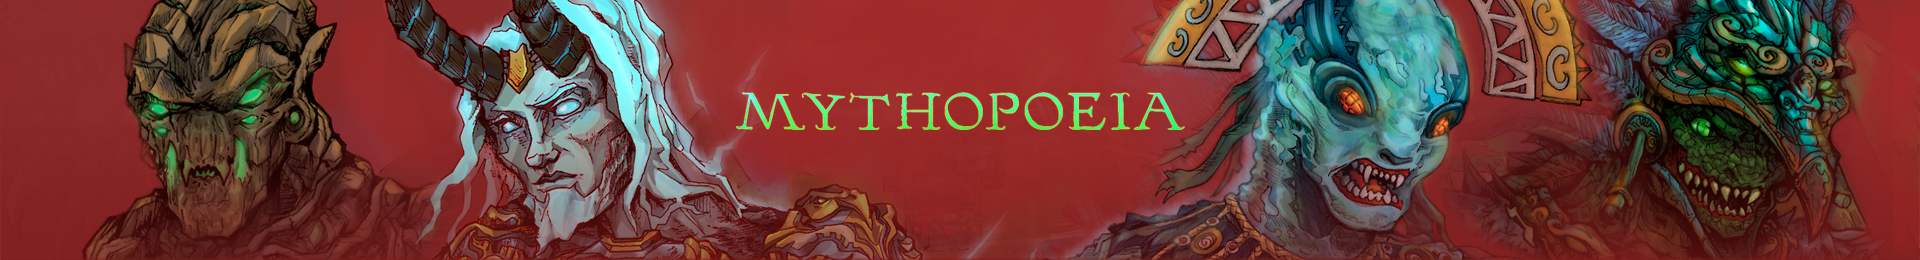 mythopoeia banner